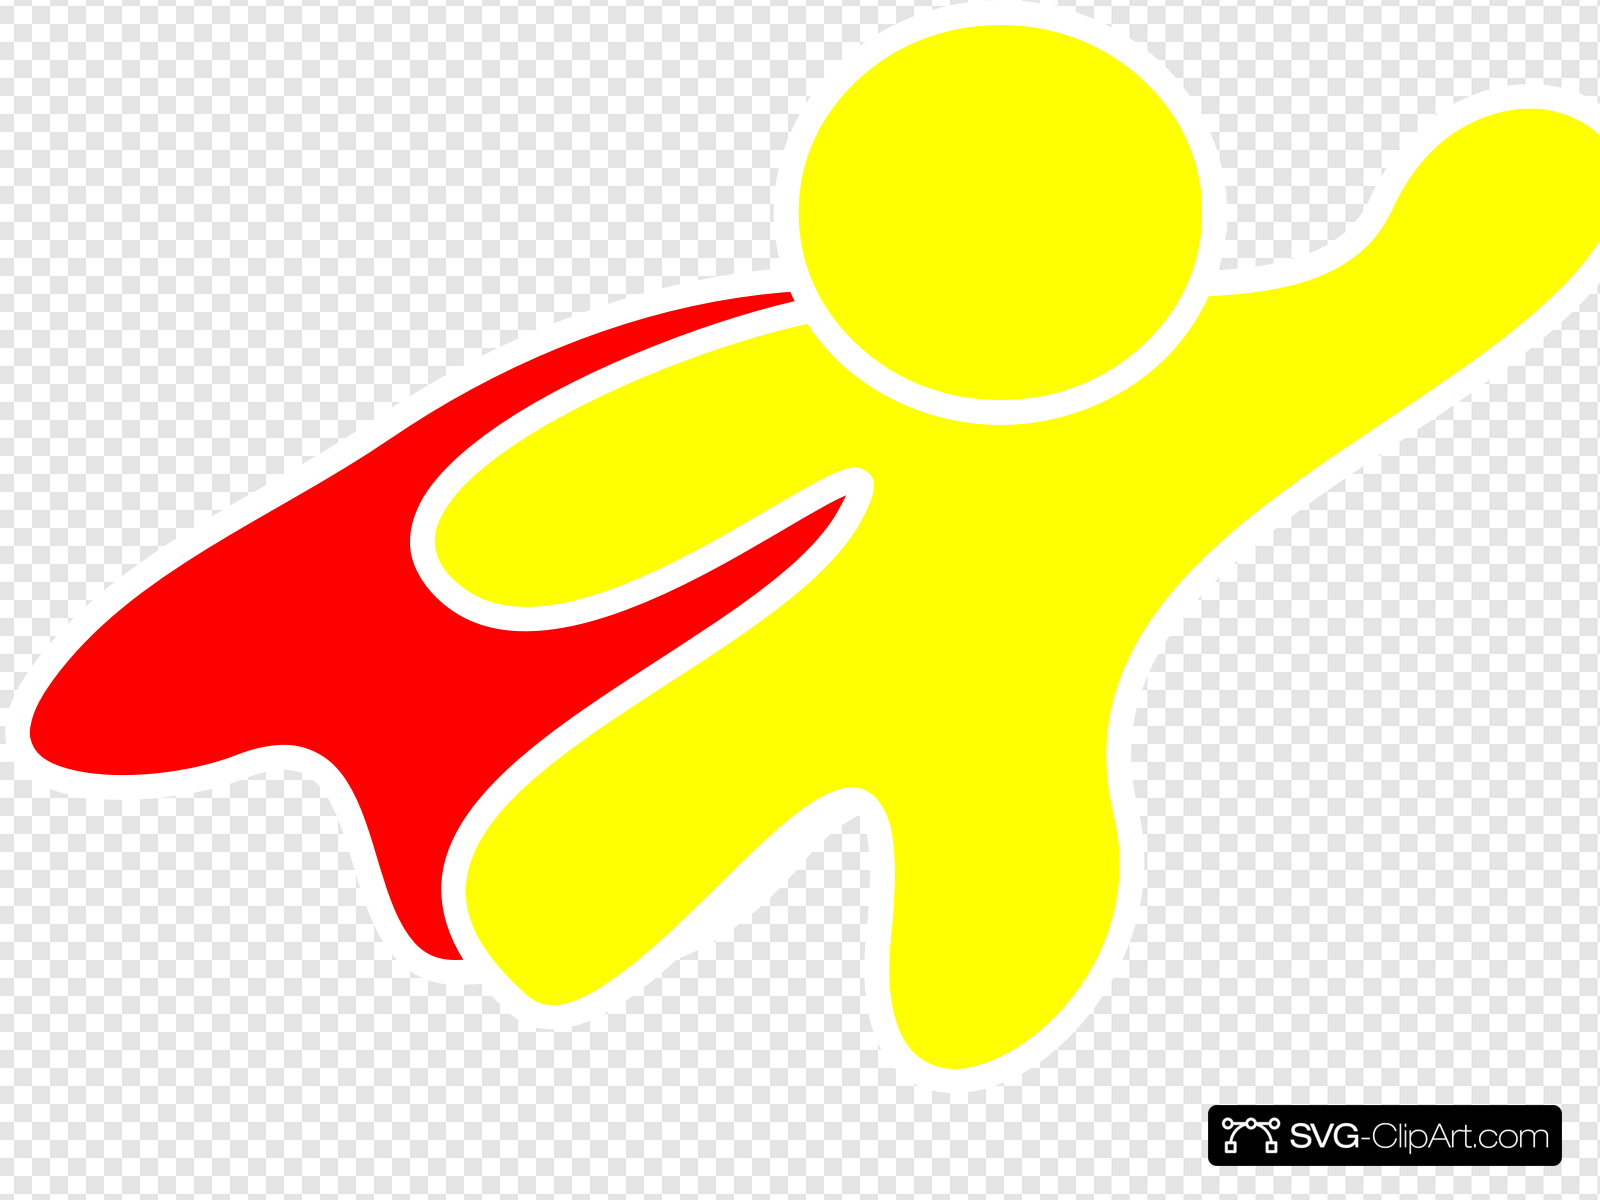 Super Hero Red Cape Clip art, Icon and SVG